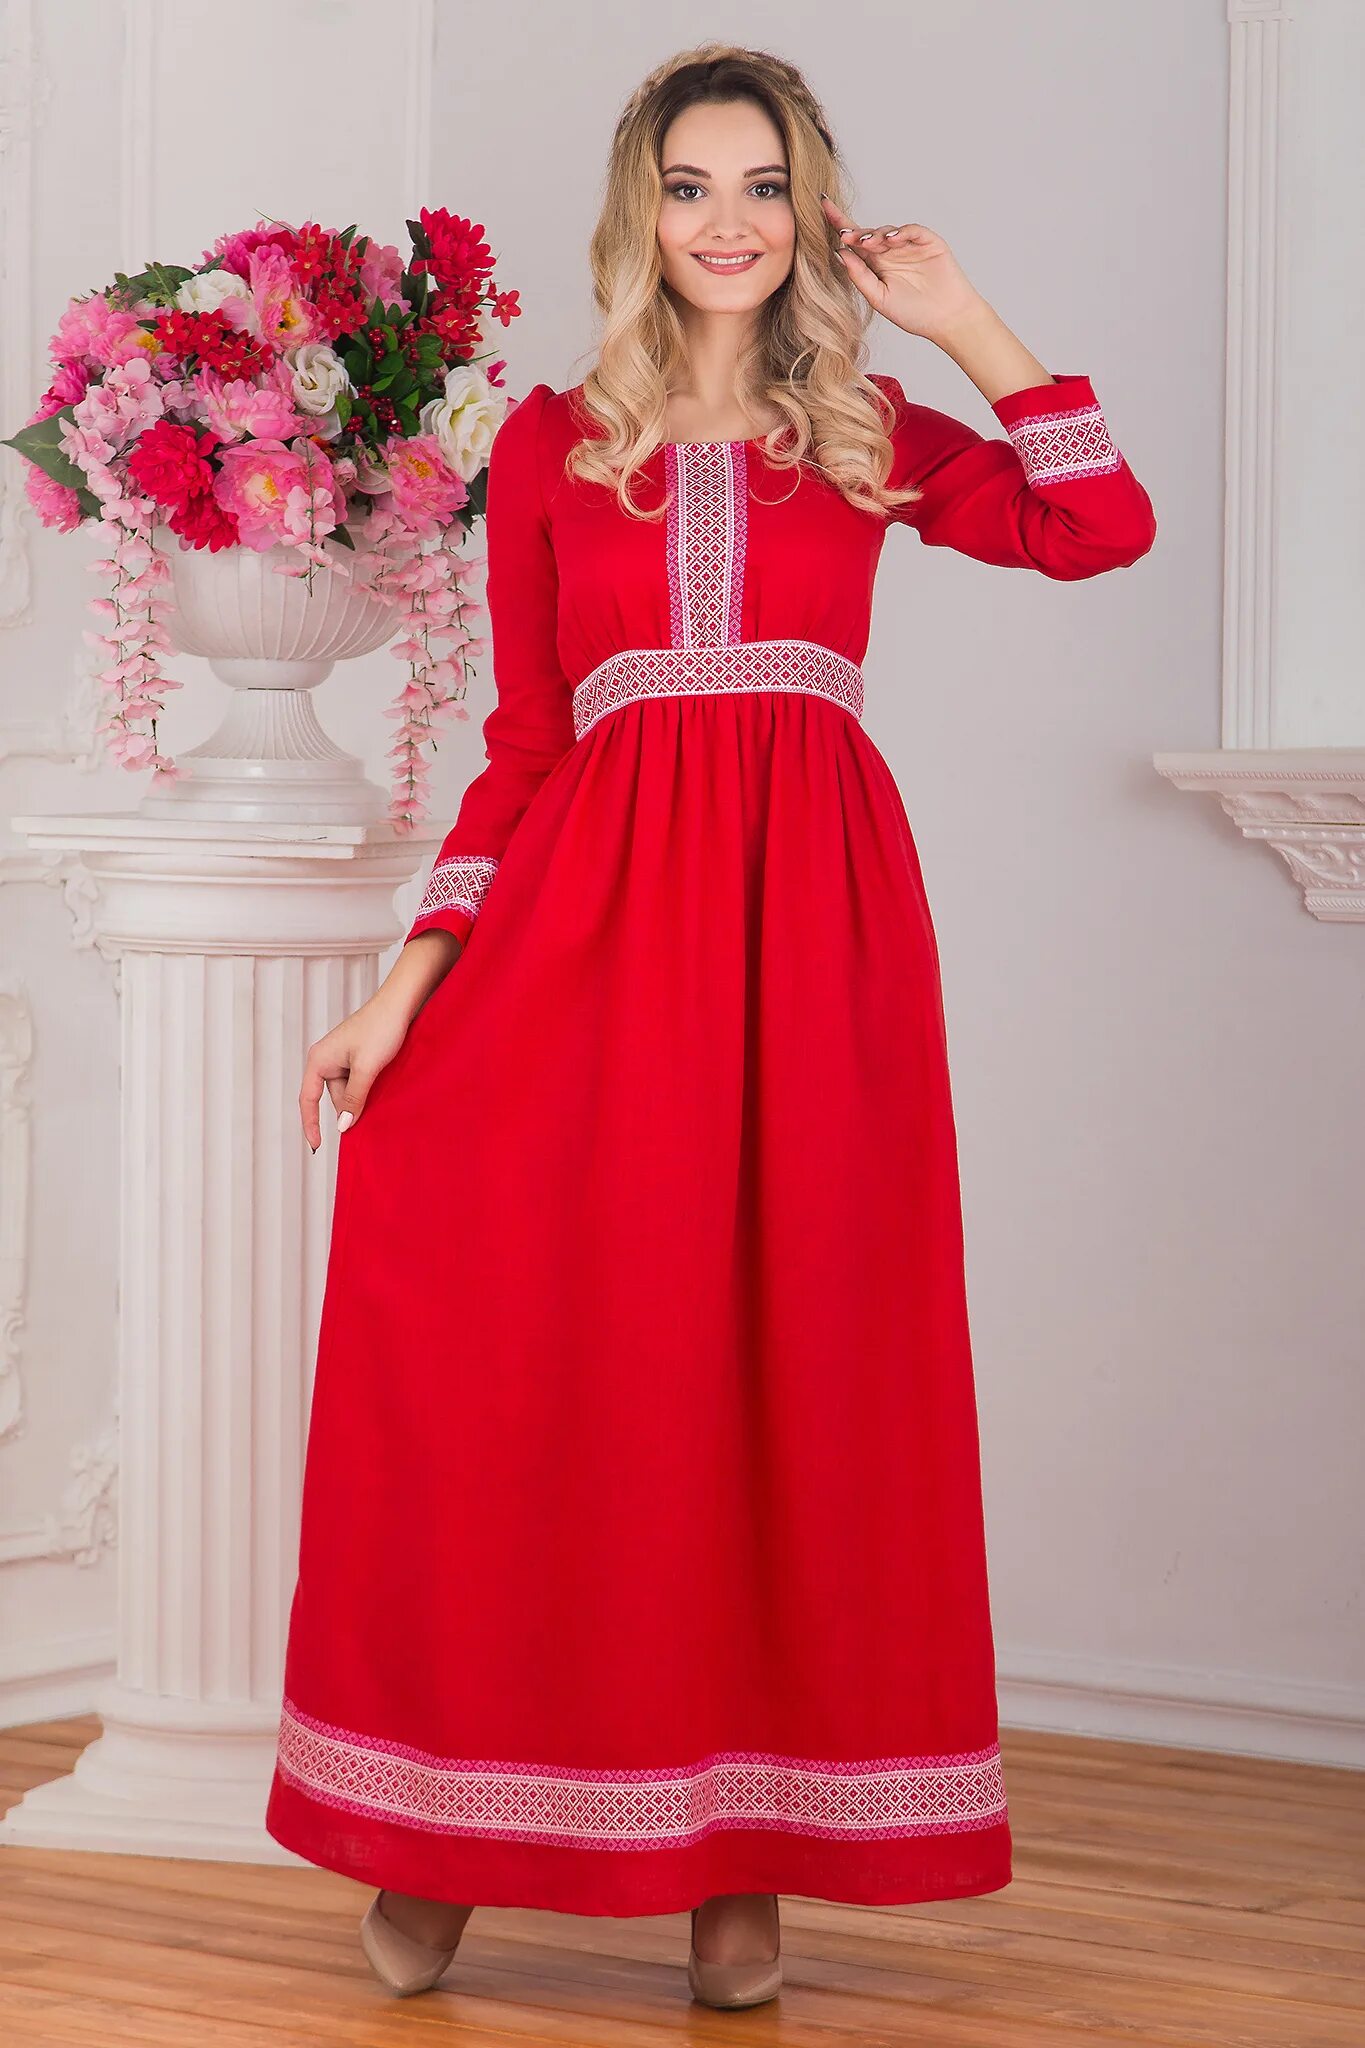 Красное платье лен. Красное платье. Платье в Славянском стиле. Платье в русском стиле. Славянское платье красное.